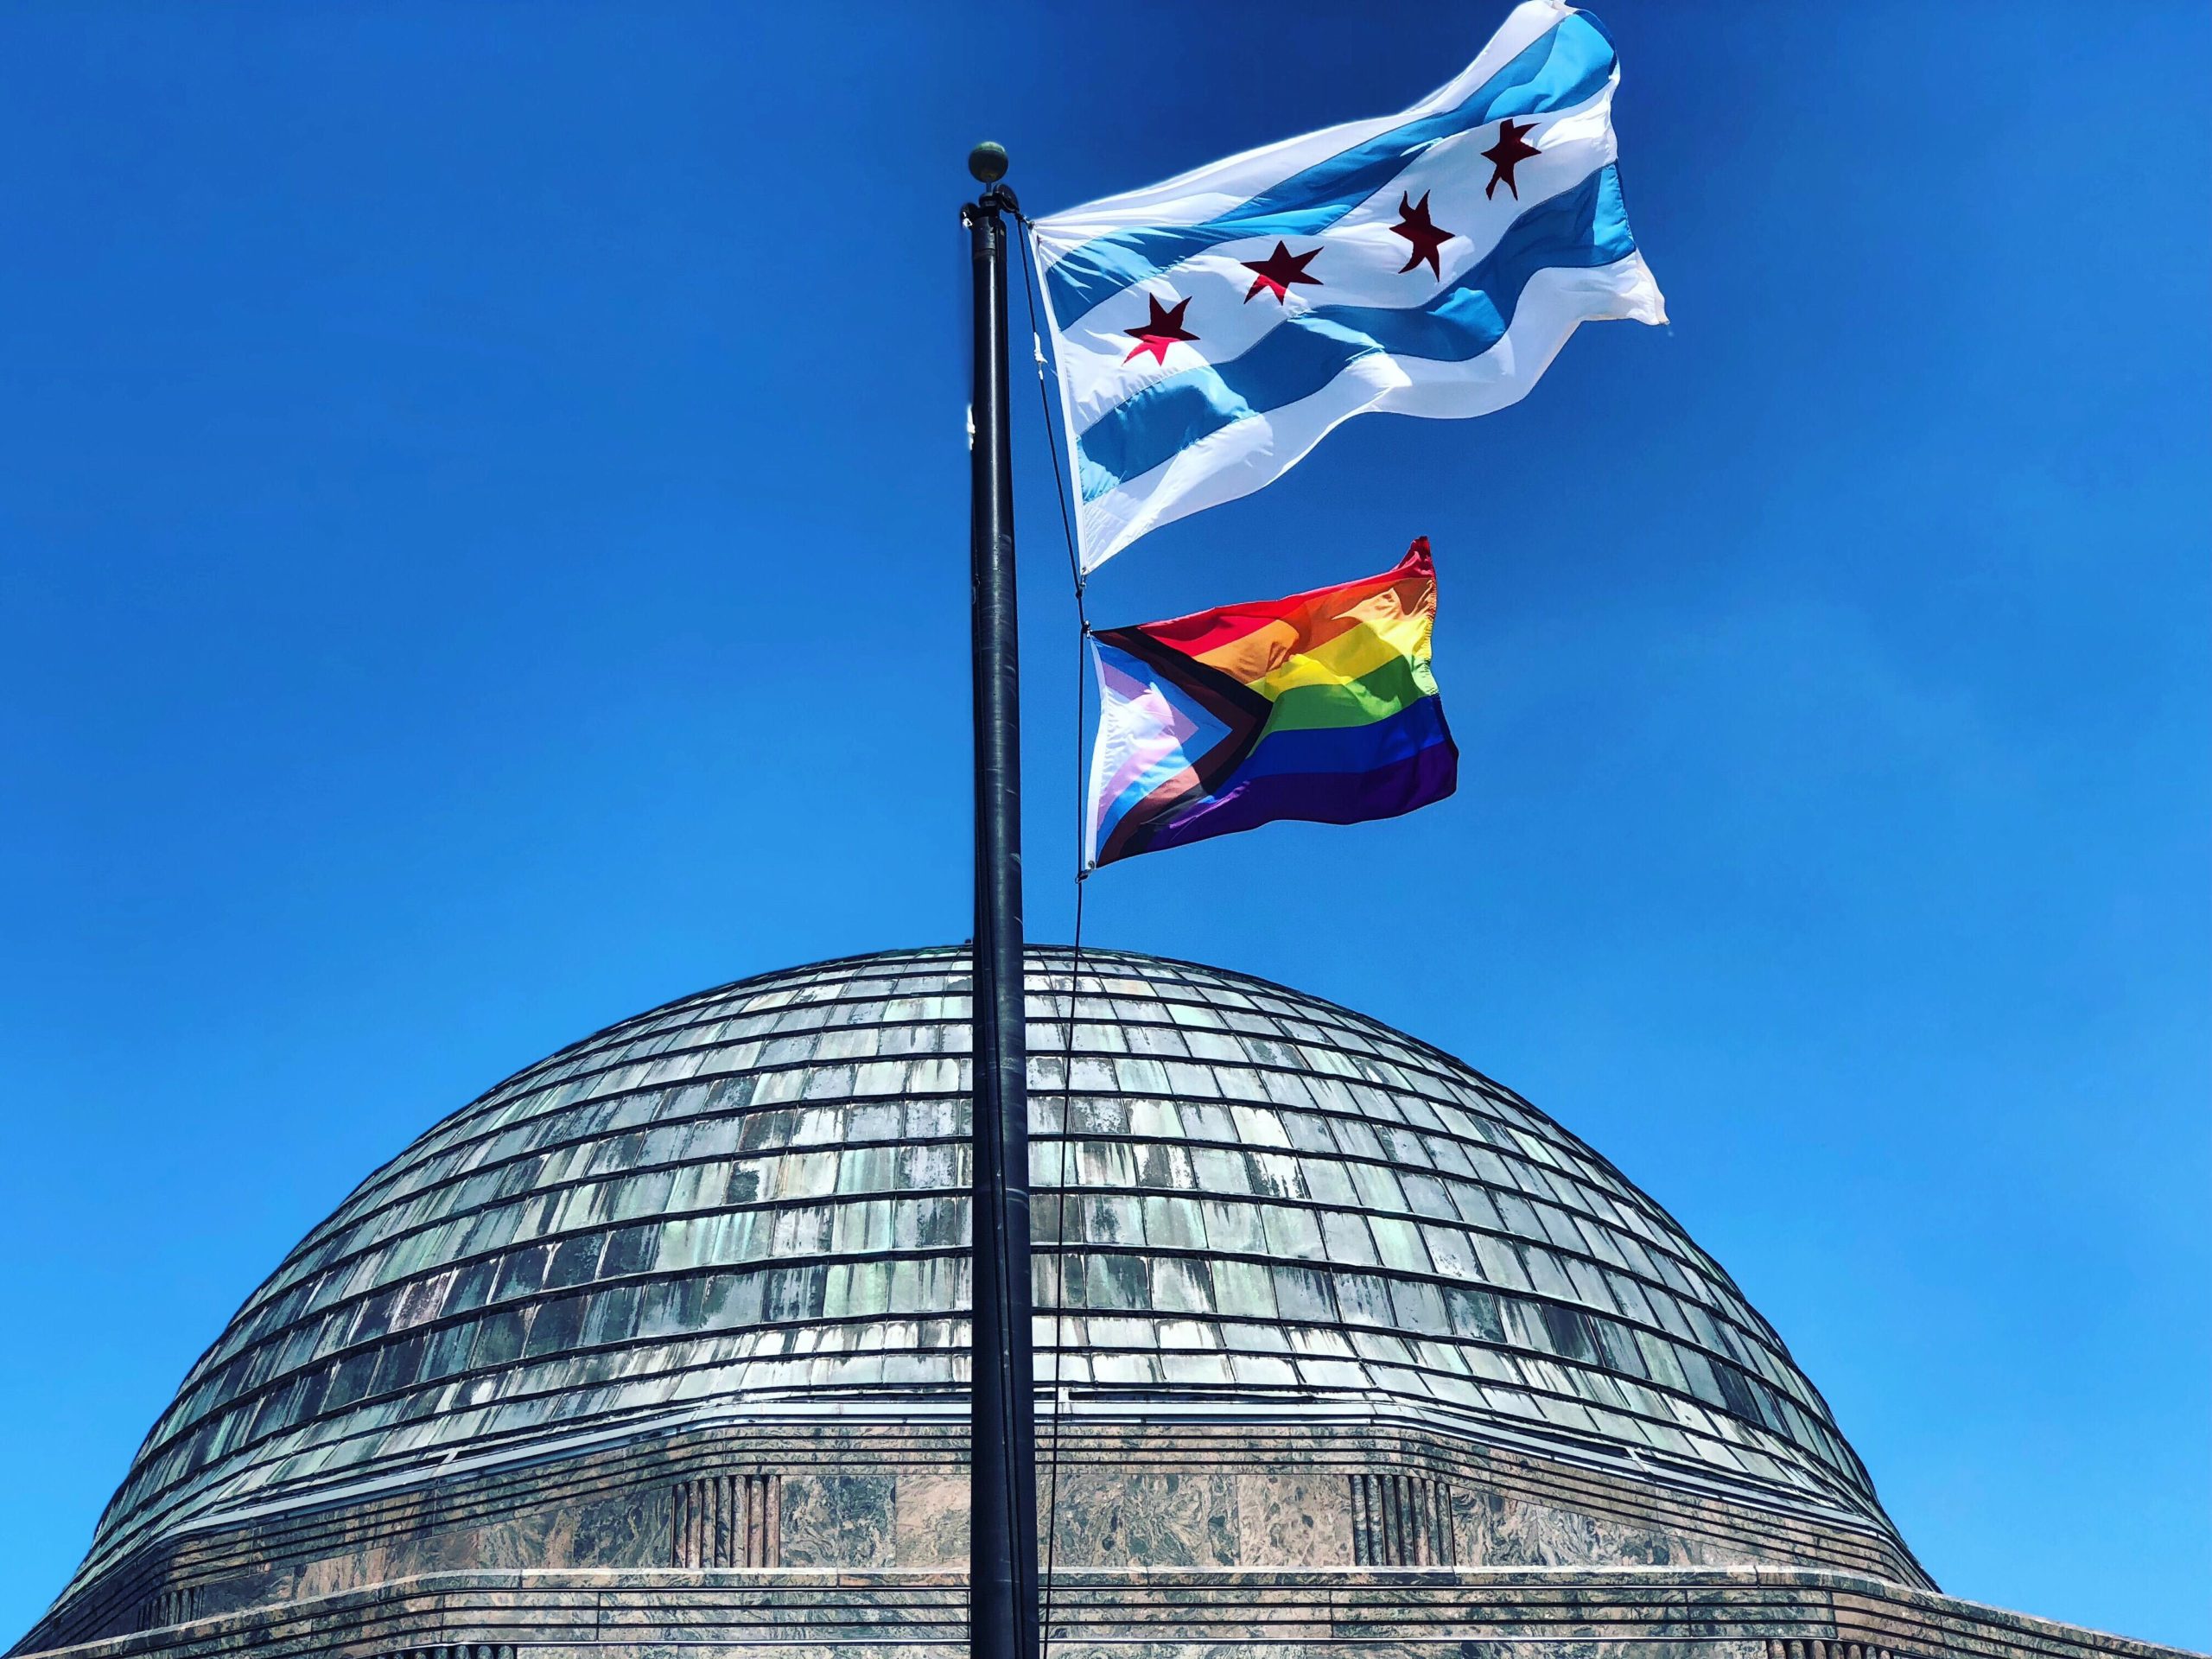 Adler Planetarium flying the Progress Pride Flag in 2019